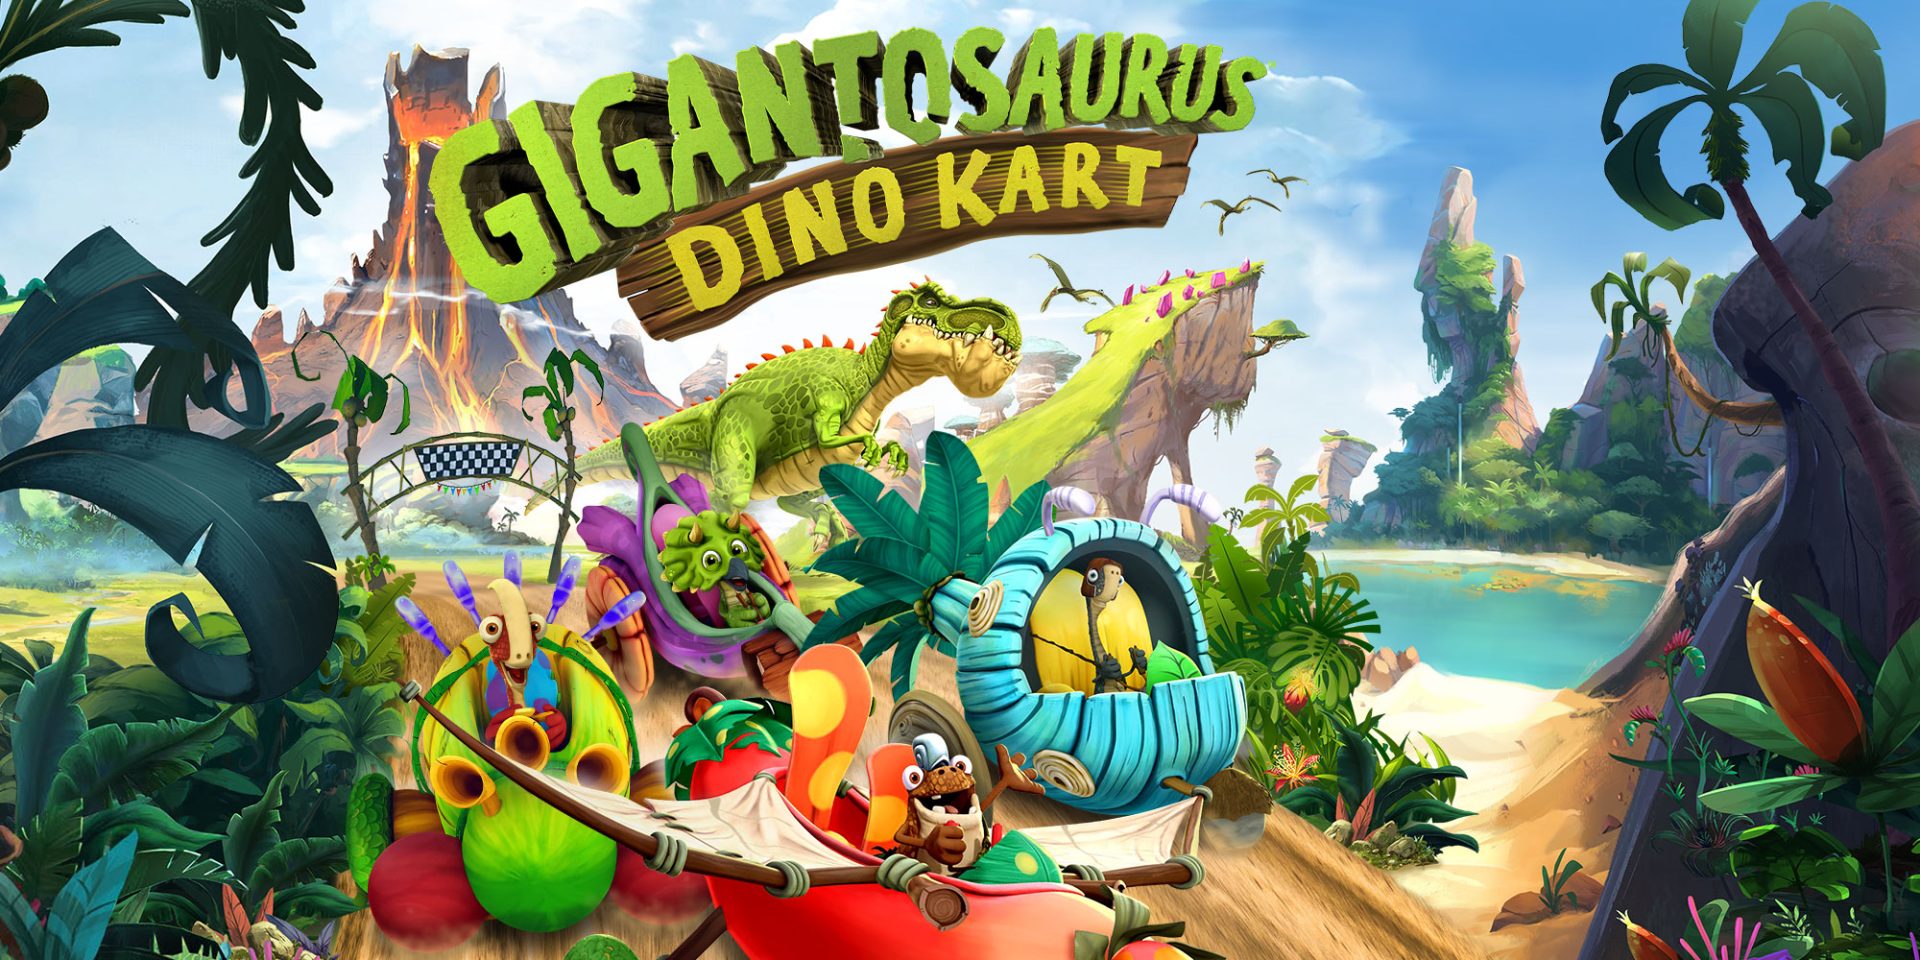 Gigantosaurus: Dino Kart Game Nintendo Switch